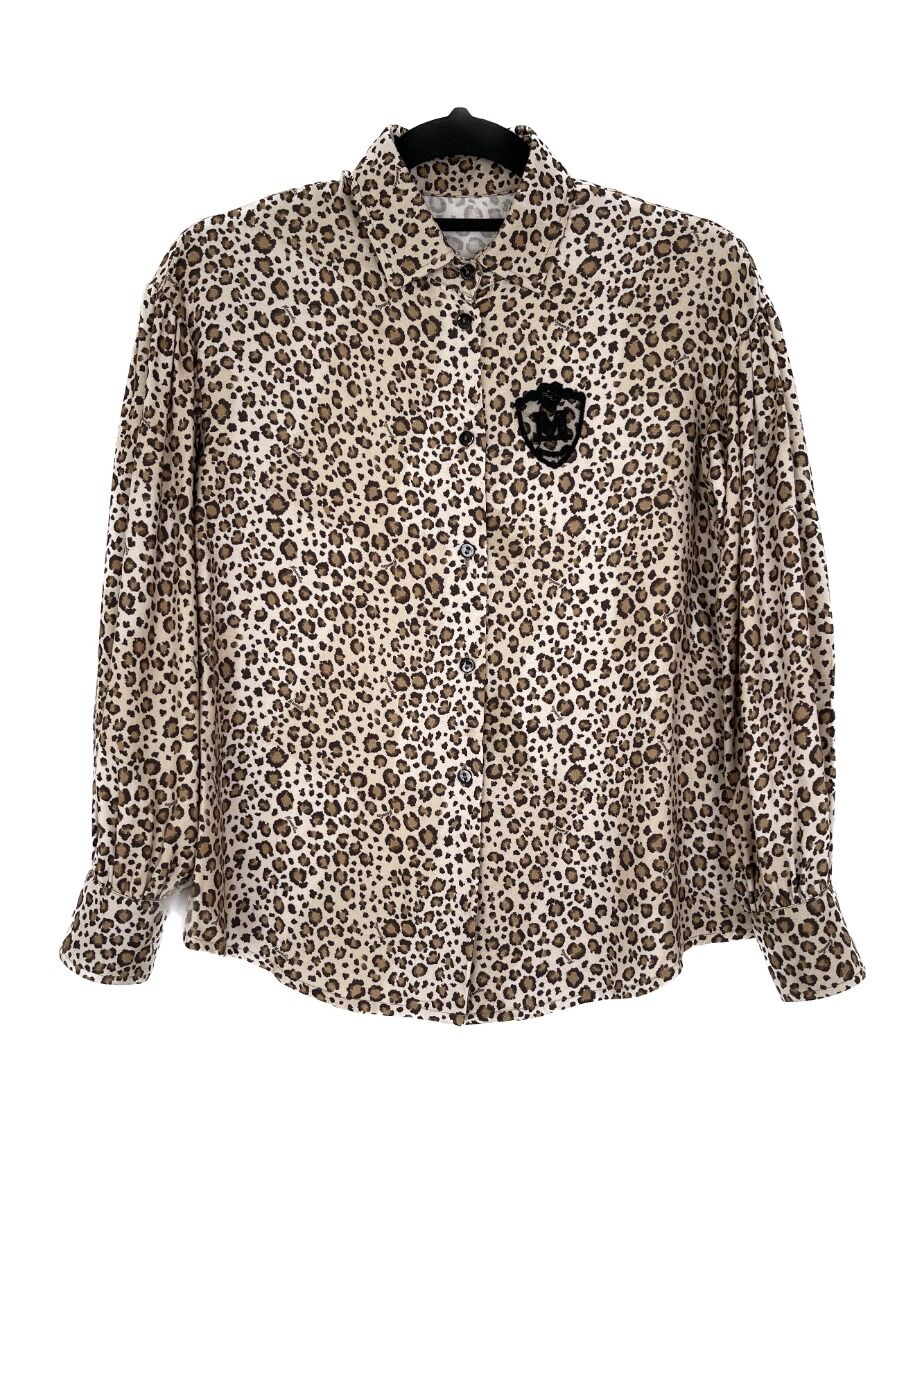 image 1 Детская блуза леопардовой расцветки